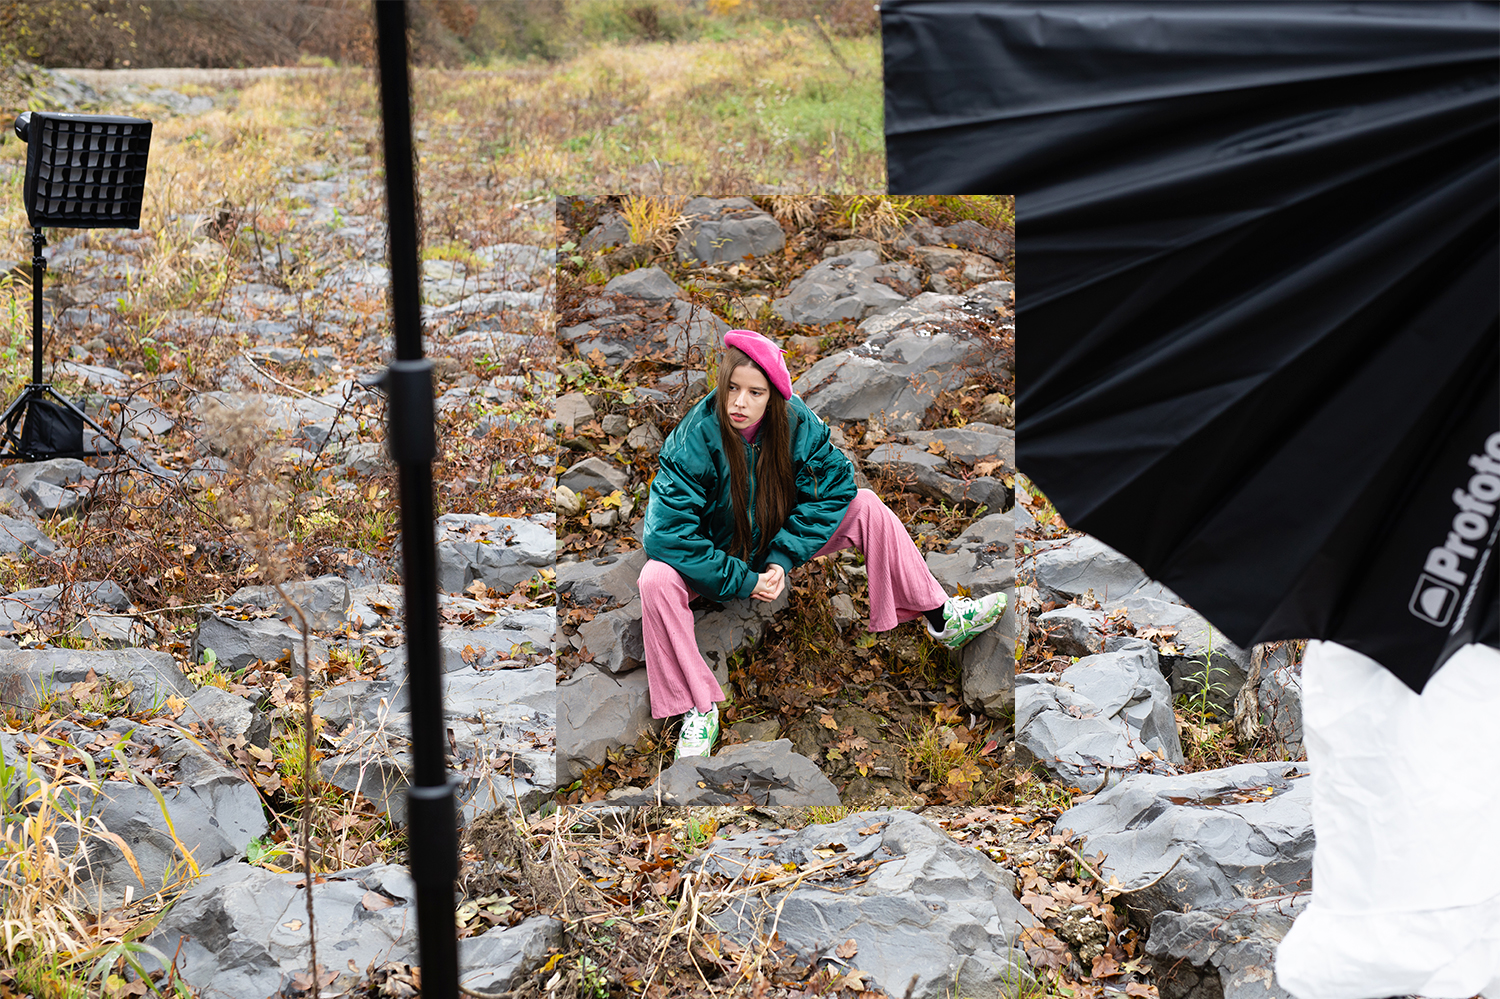 Mode-Fotoshooting on Location, Werbeproduktion im Herbst in der Steiermark mit mobiler Blitzlichtanlage